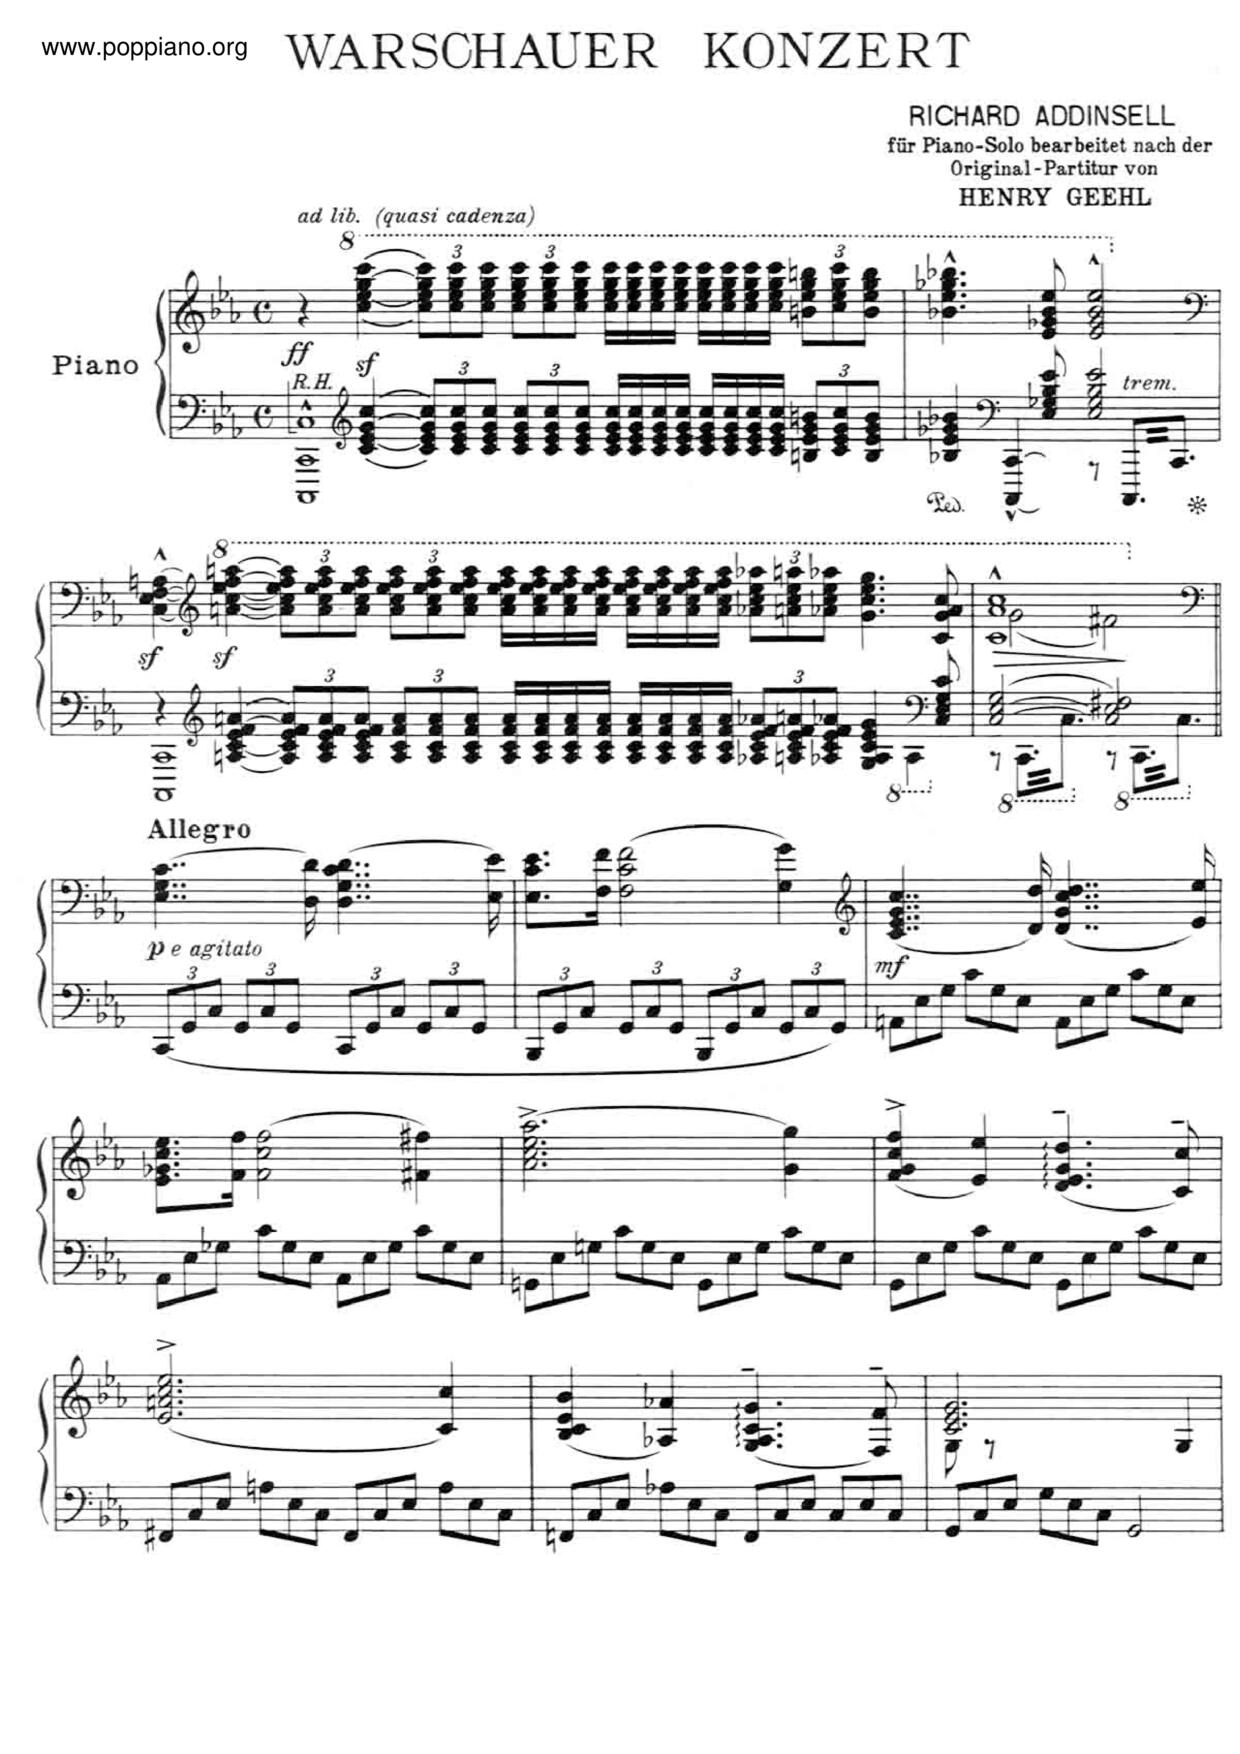 Warsaw Concerto琴譜